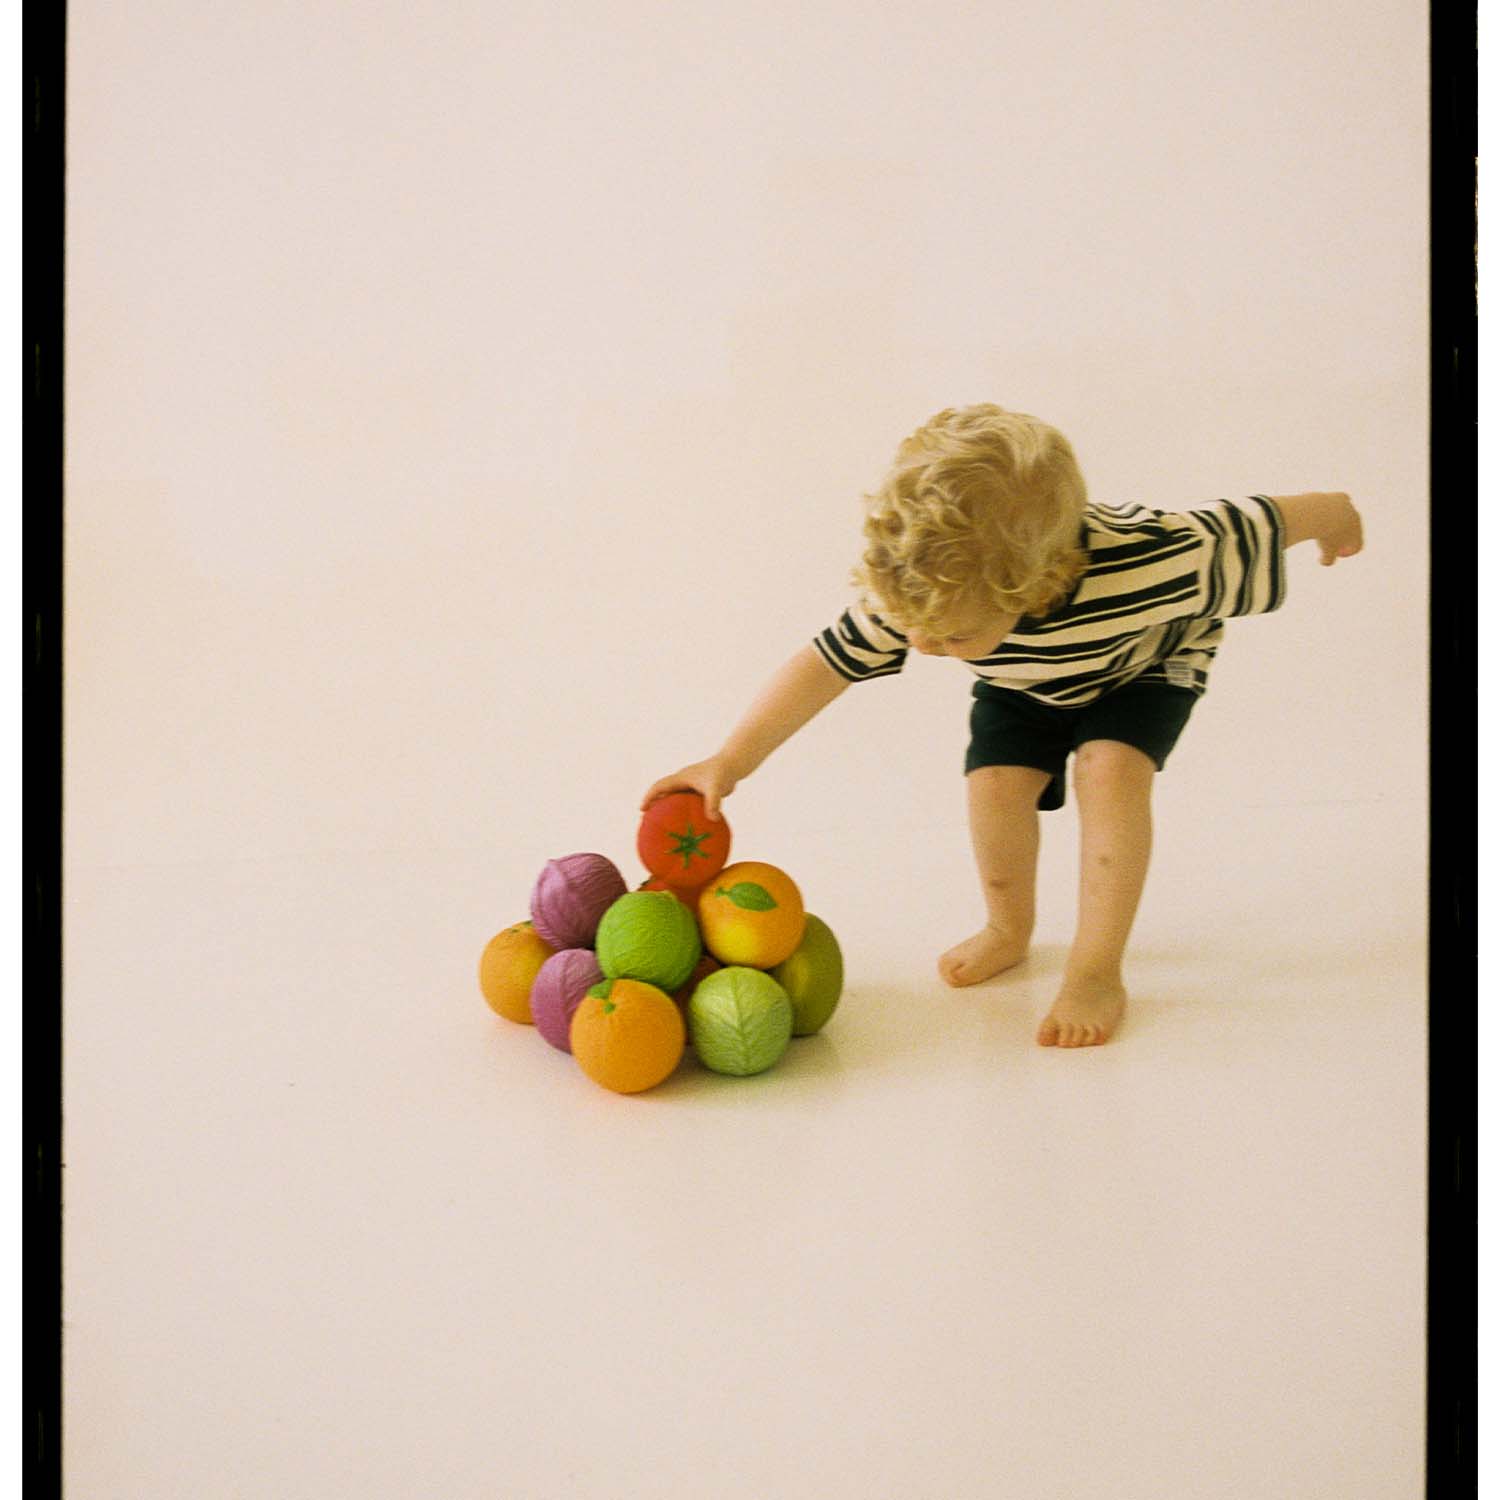 Tomate Baby Ball, Bola Sensorial para Bebés